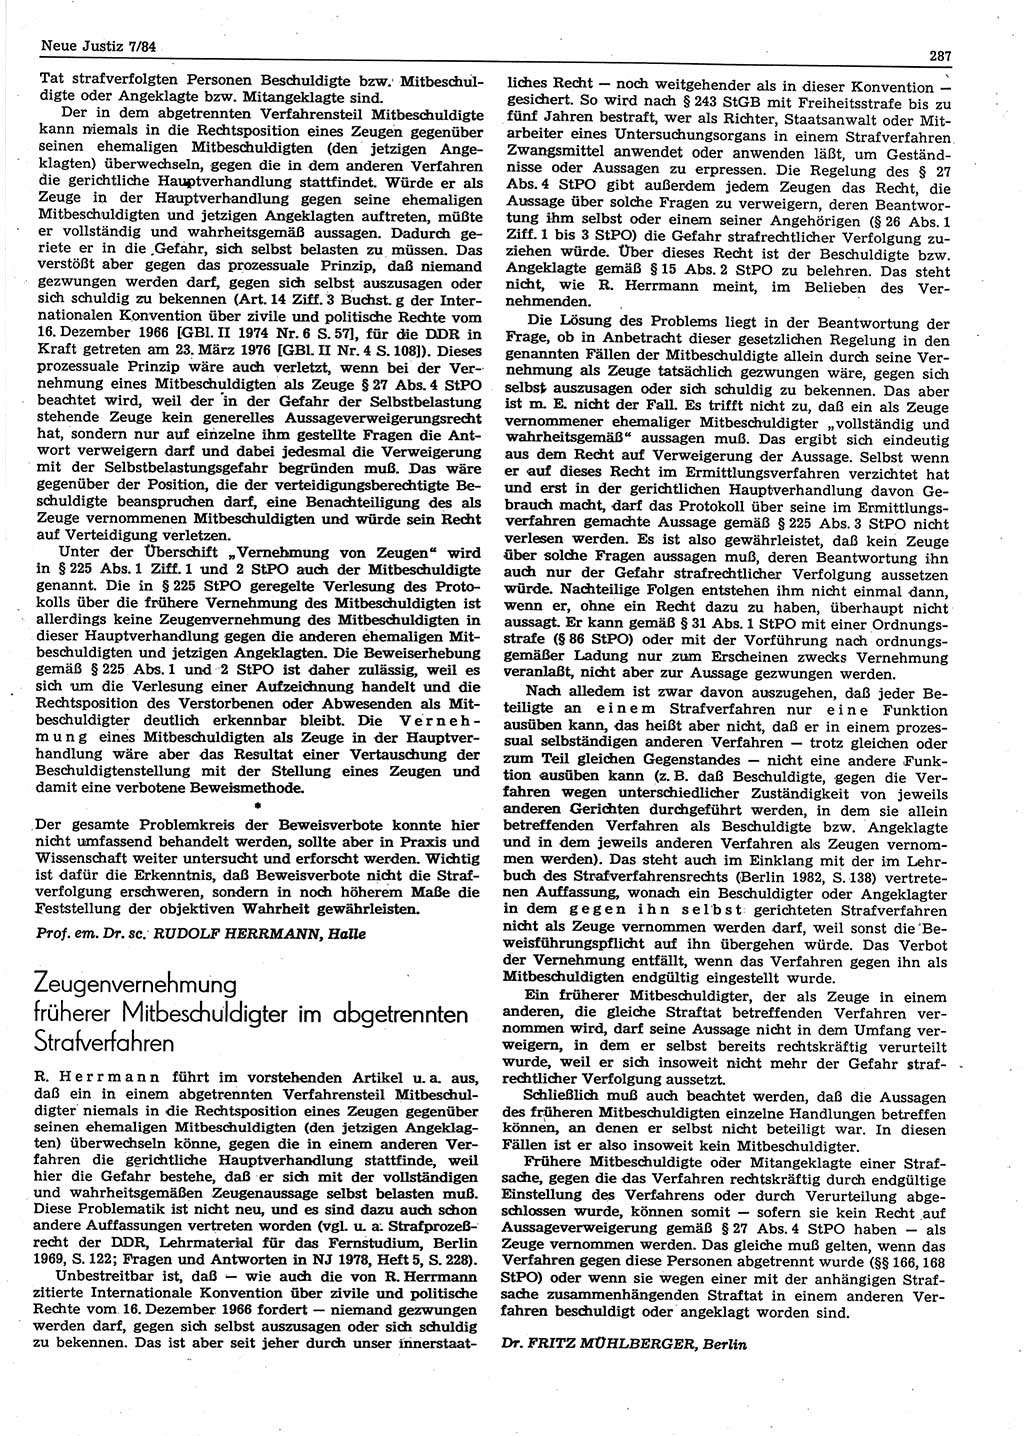 Neue Justiz (NJ), Zeitschrift für sozialistisches Recht und Gesetzlichkeit [Deutsche Demokratische Republik (DDR)], 38. Jahrgang 1984, Seite 287 (NJ DDR 1984, S. 287)